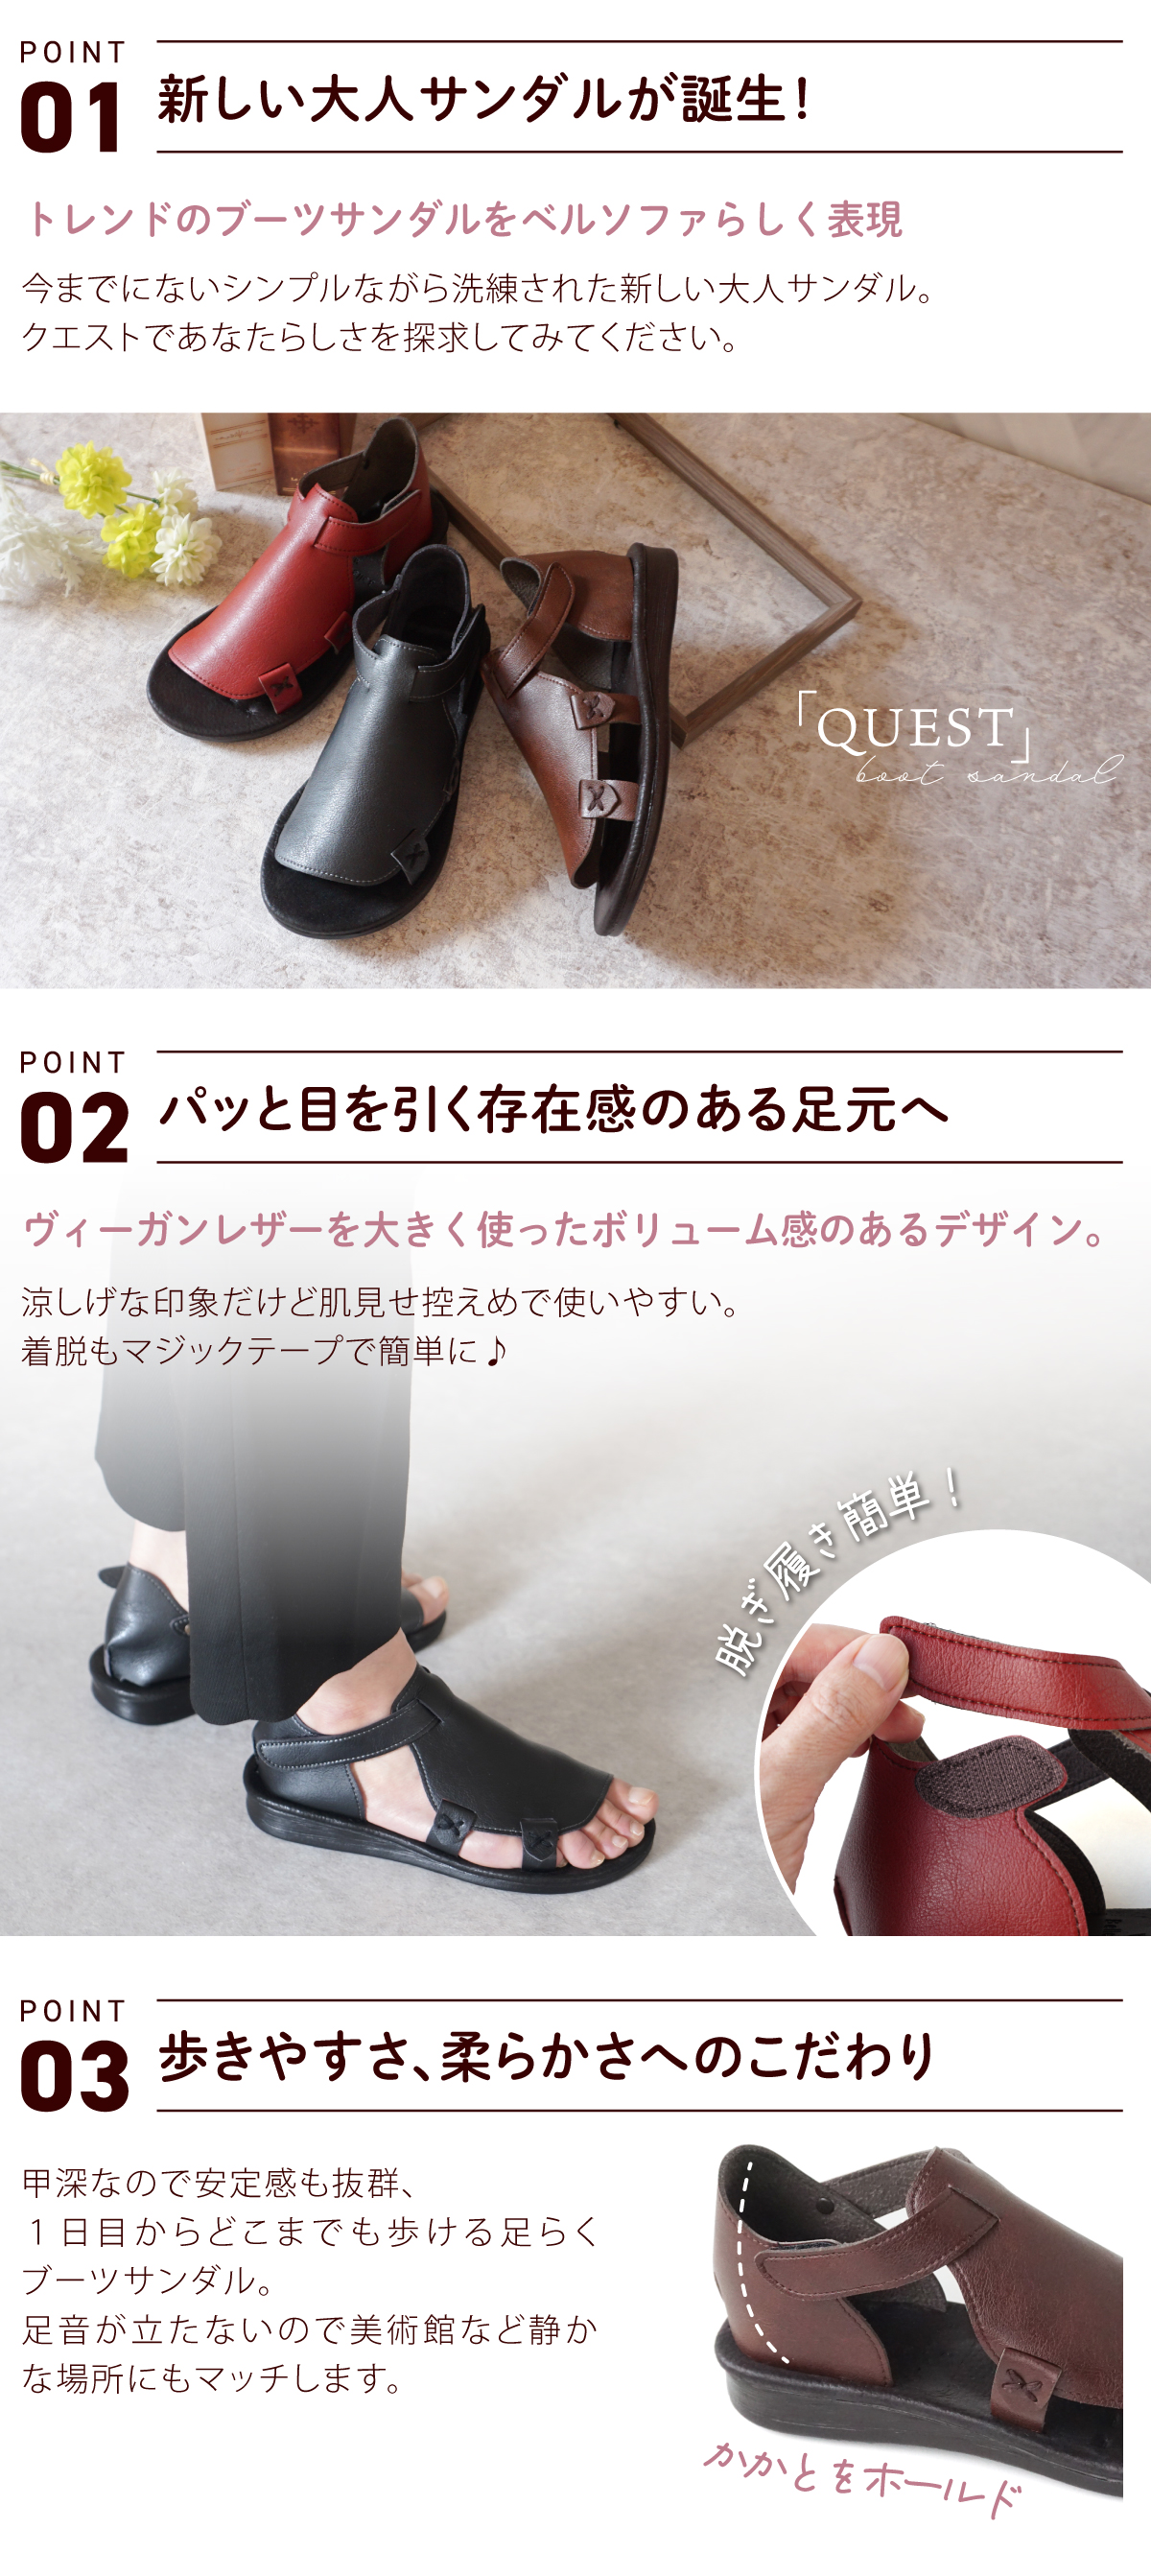 サンダル レディース ブーツ コンフォートシューズ 歩きやすい 疲れない 痛くない ゆったり ヴィーガンレザー ベルクロ 靴 日本製 クエスト QUEST